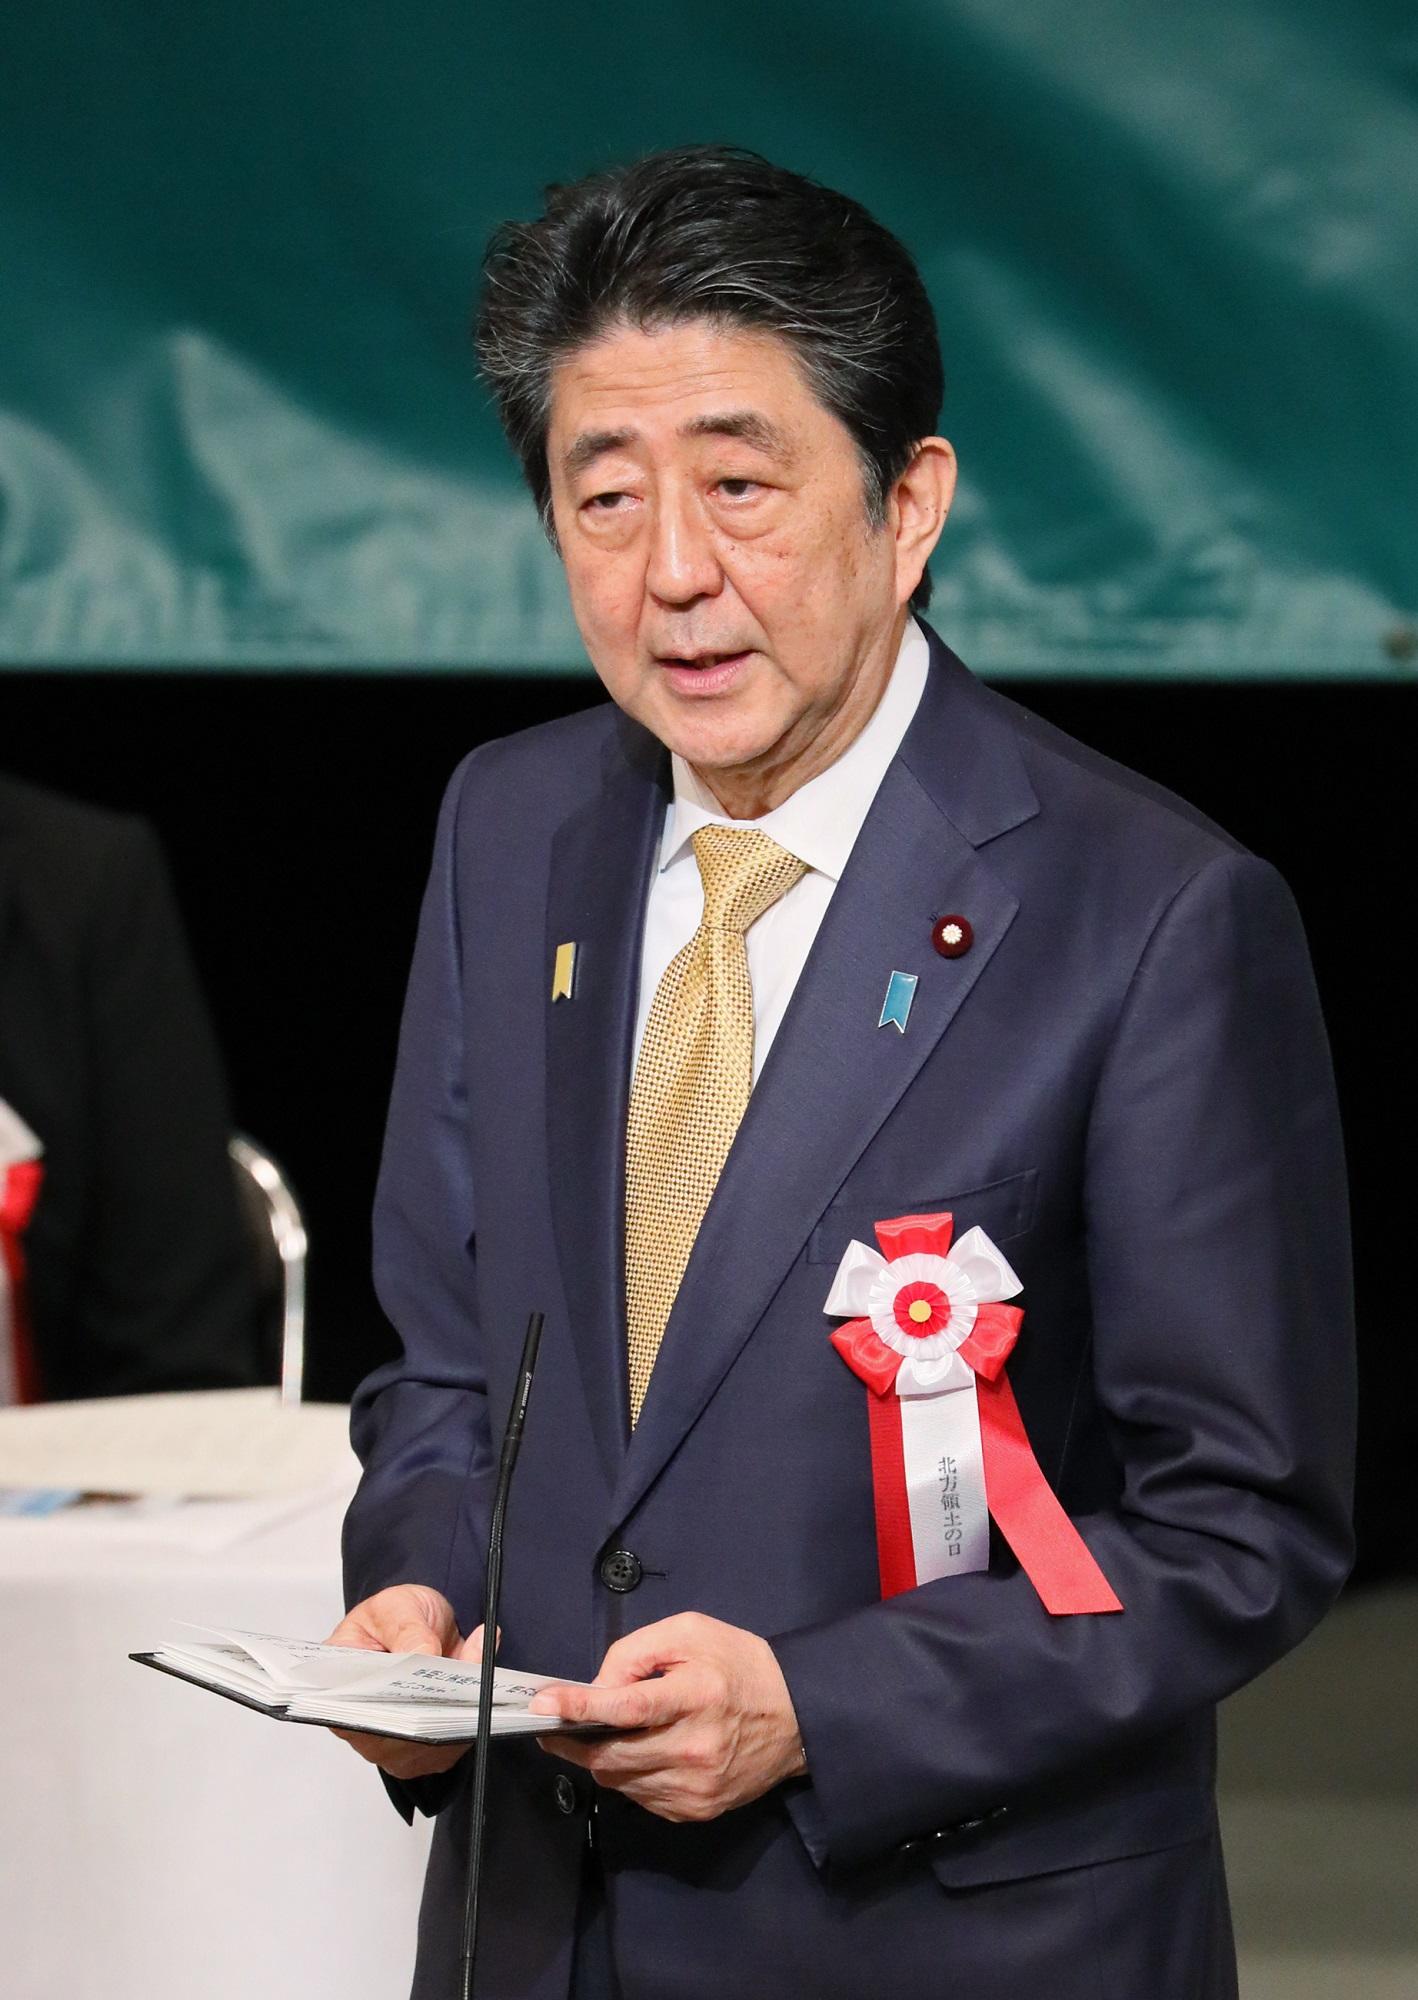 安倍总理出席了在东京都内举行的要求归还北方领土全国大会。